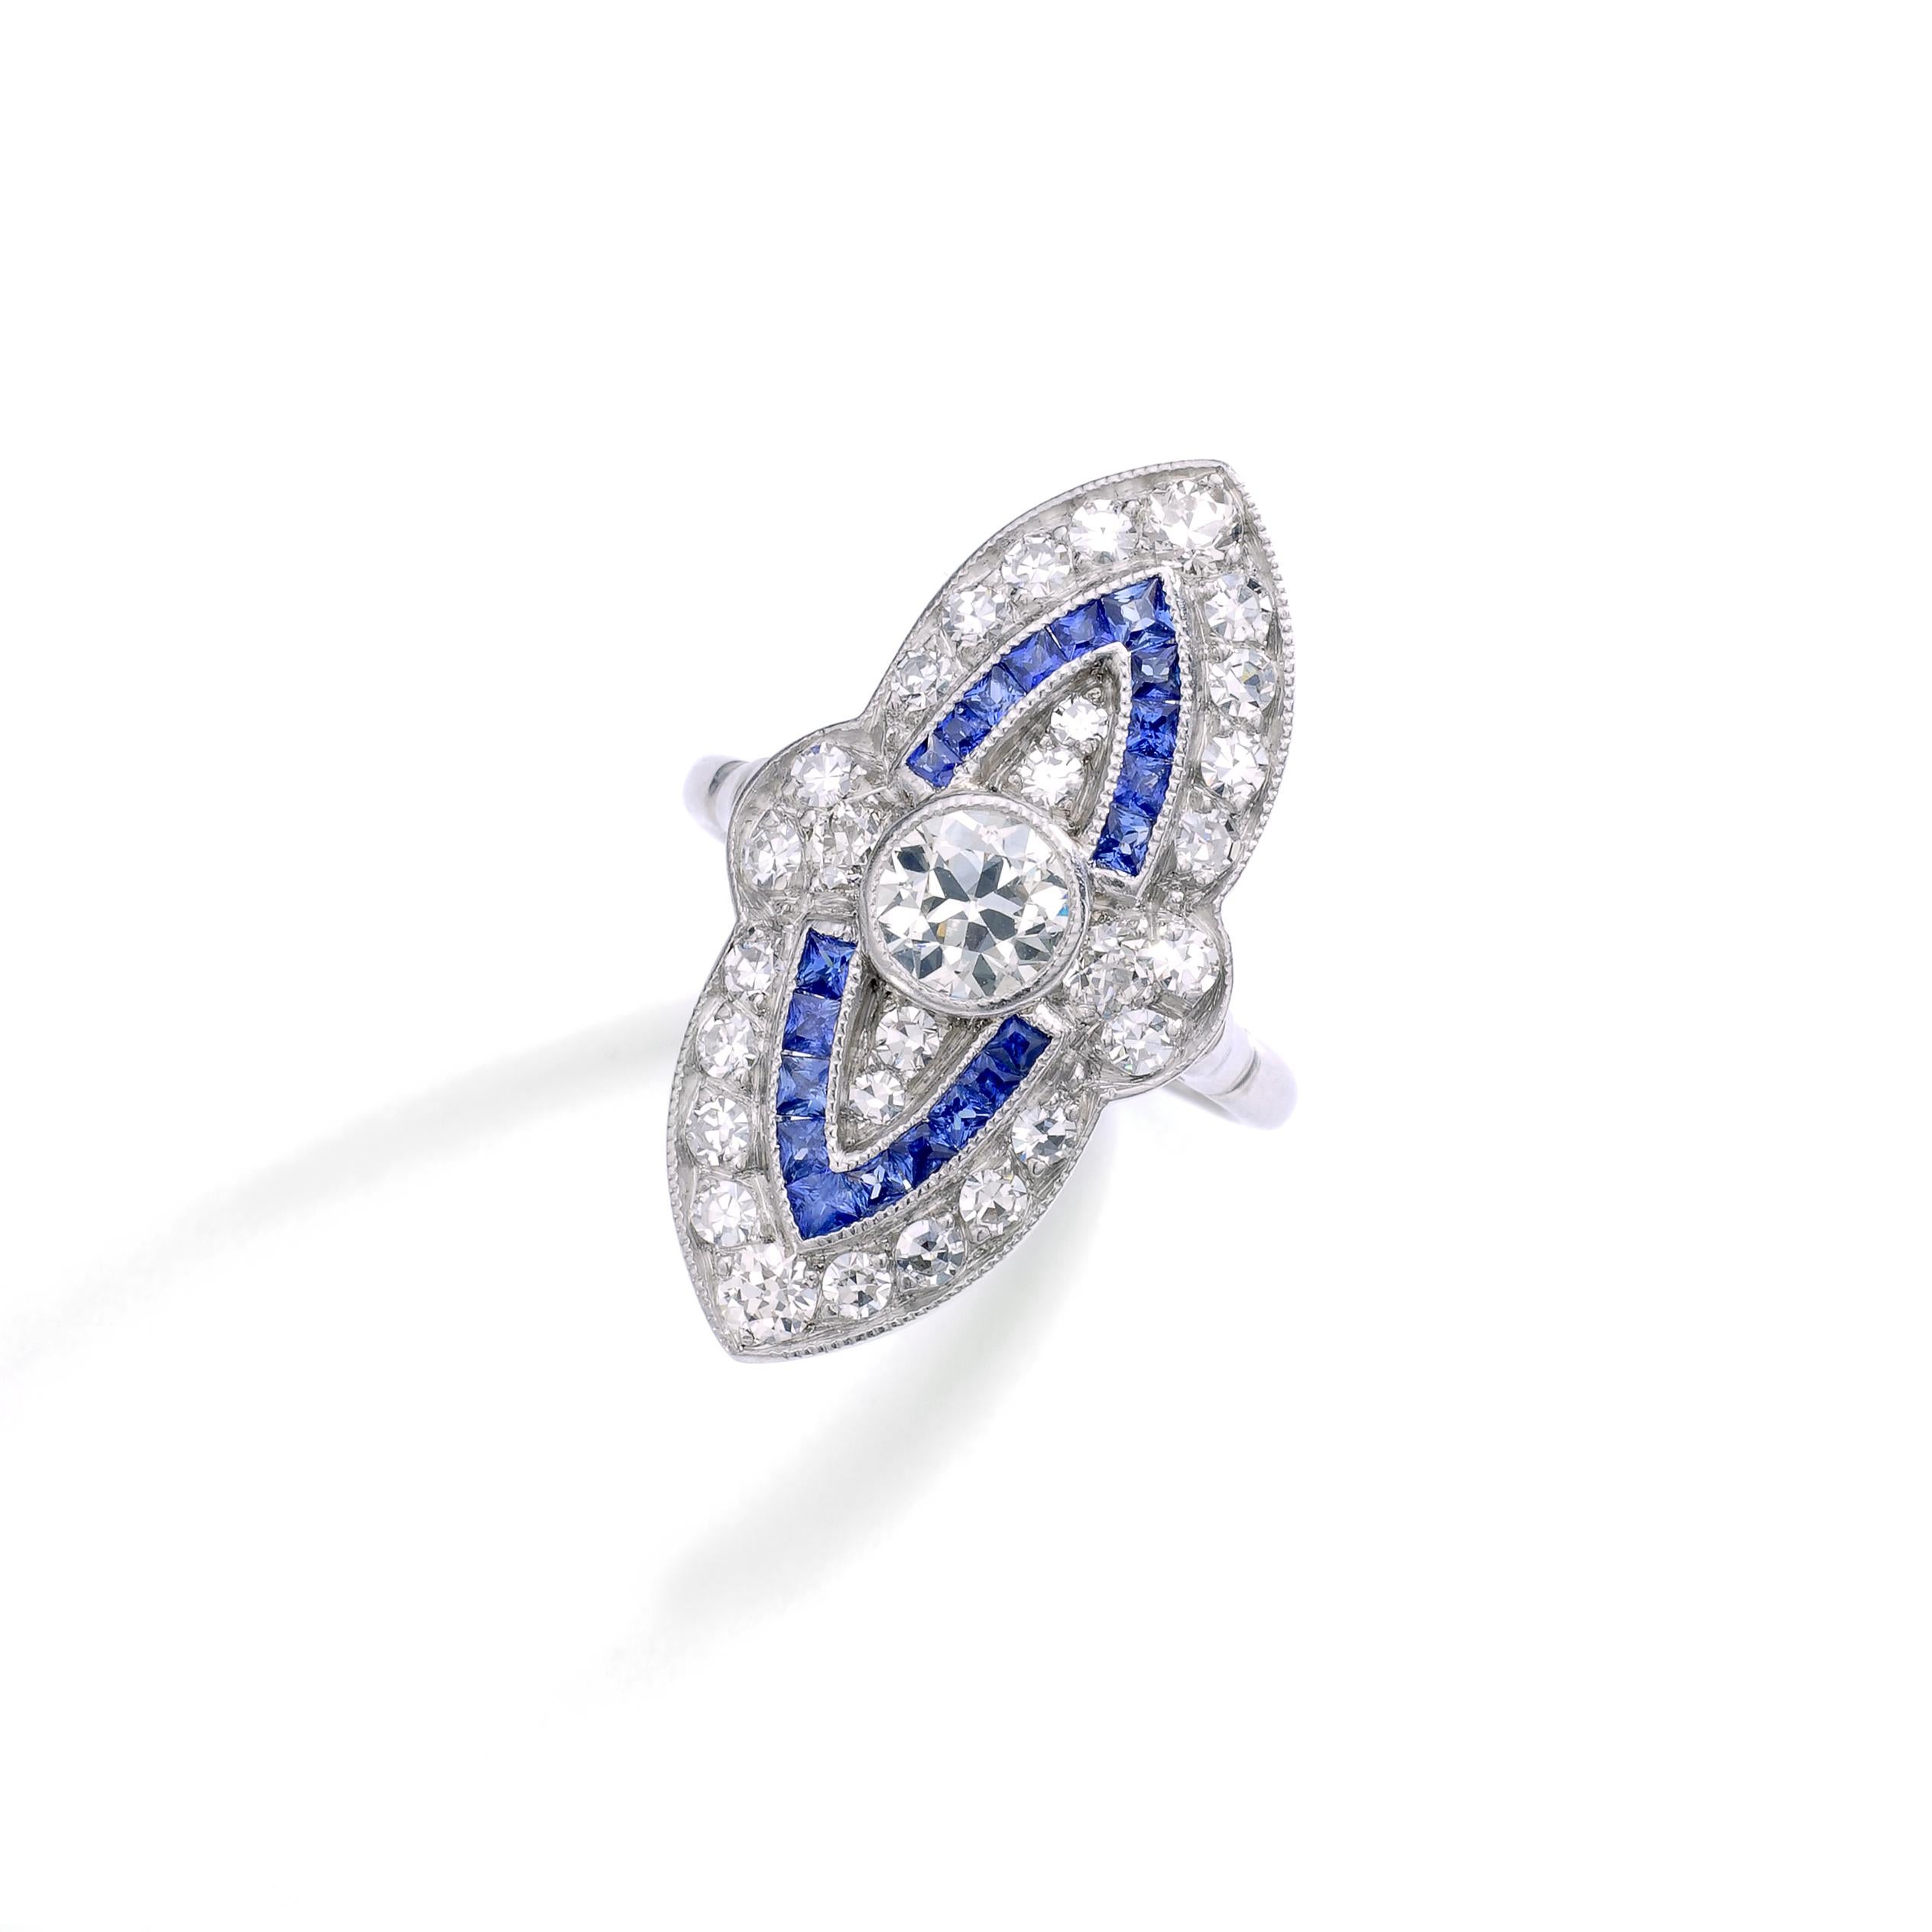 Bague en platine avec diamant marquise et saphir calibré de style Art déco.
Poids total des diamants : environ 1,50 carat.

Taille de l'anneau : 6.